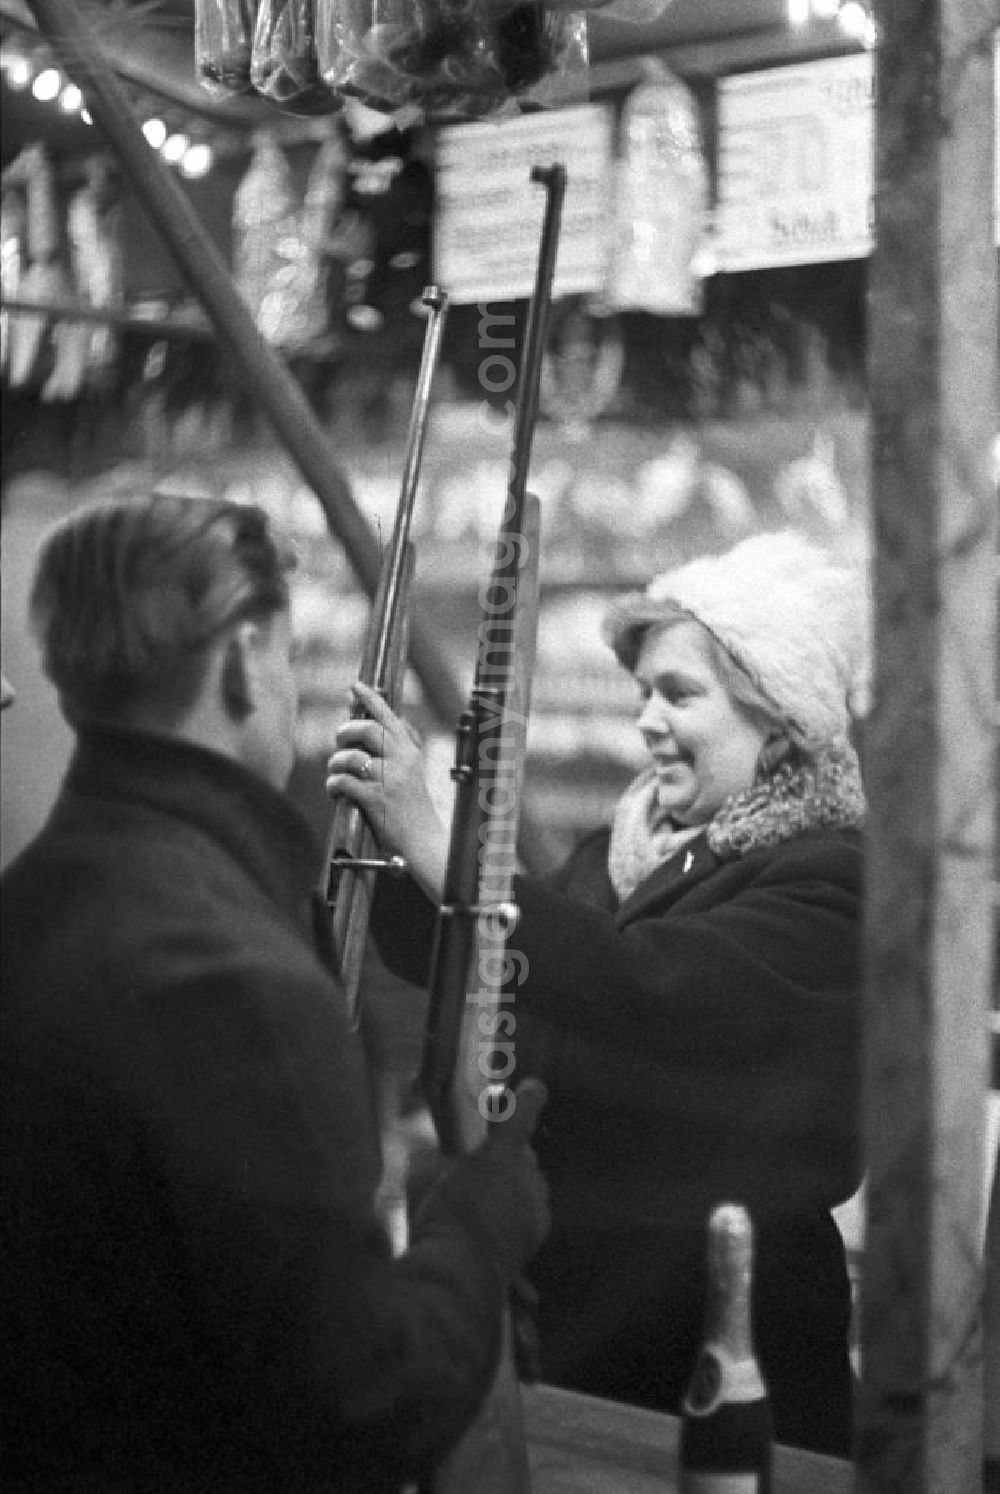 GDR photo archive: Leipzig - Eine Schaustellerin des Schießstandes auf dem Leipziger Weihnachtsmarkt hilft den Kunden beim Laden des Gewehres.